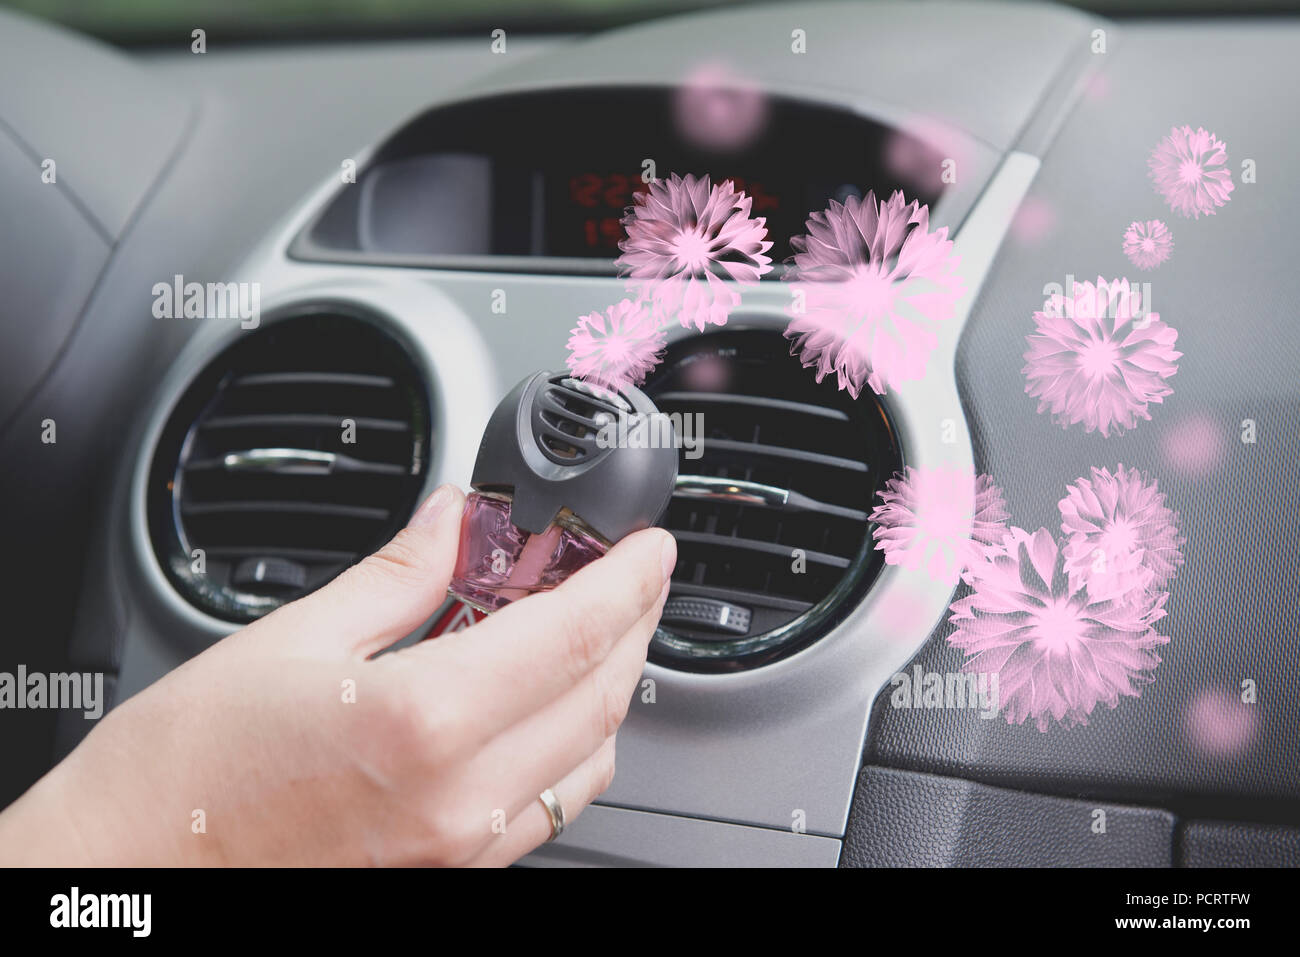 Auto Lufterfrischer ventilation Panel montiert, frische Blumen Duft  Stockfotografie - Alamy